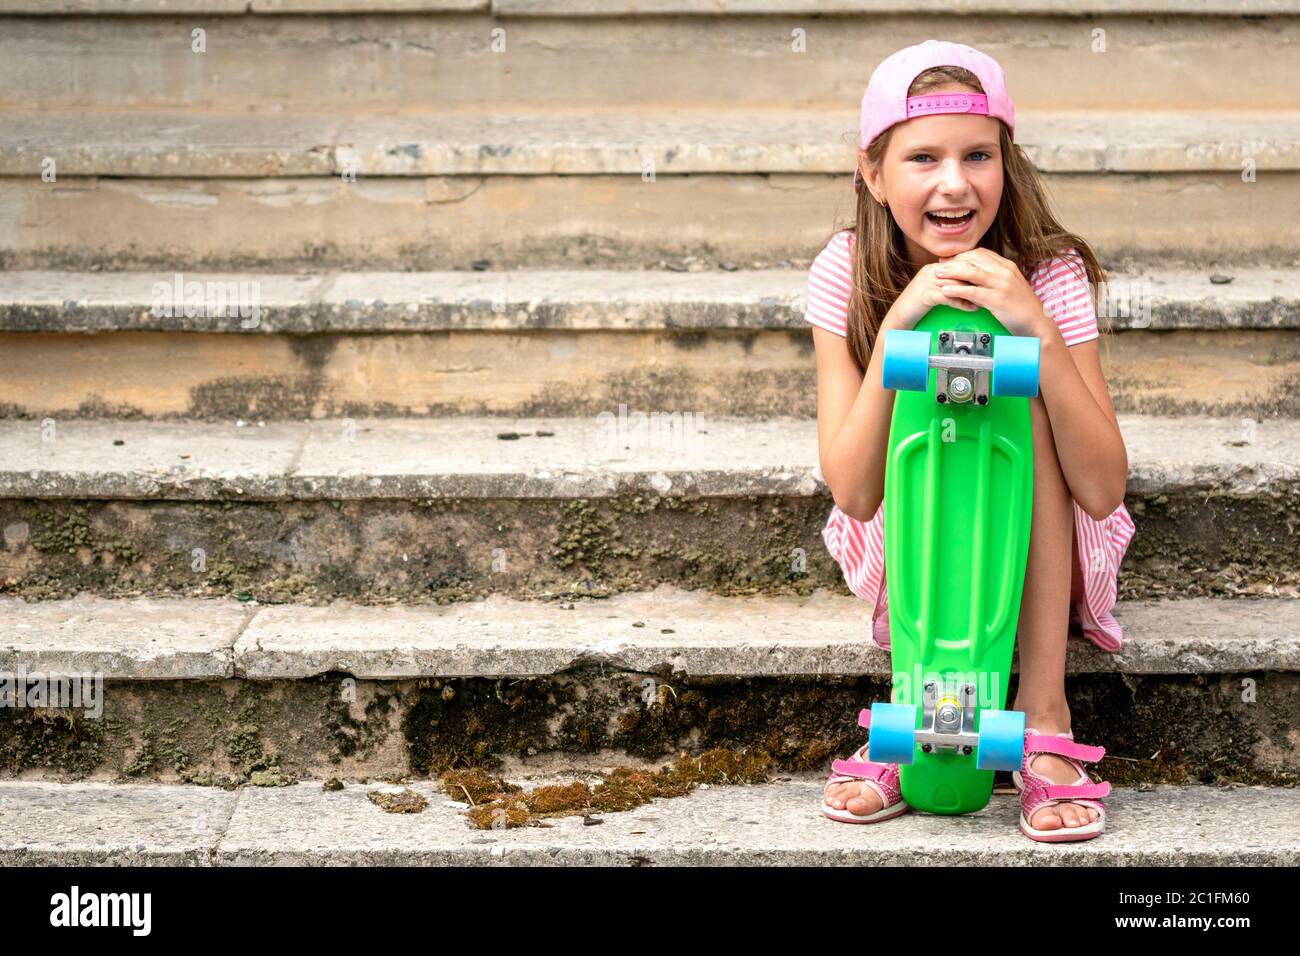 Chica con tabla de skate sentada en la escalera Foto de stock